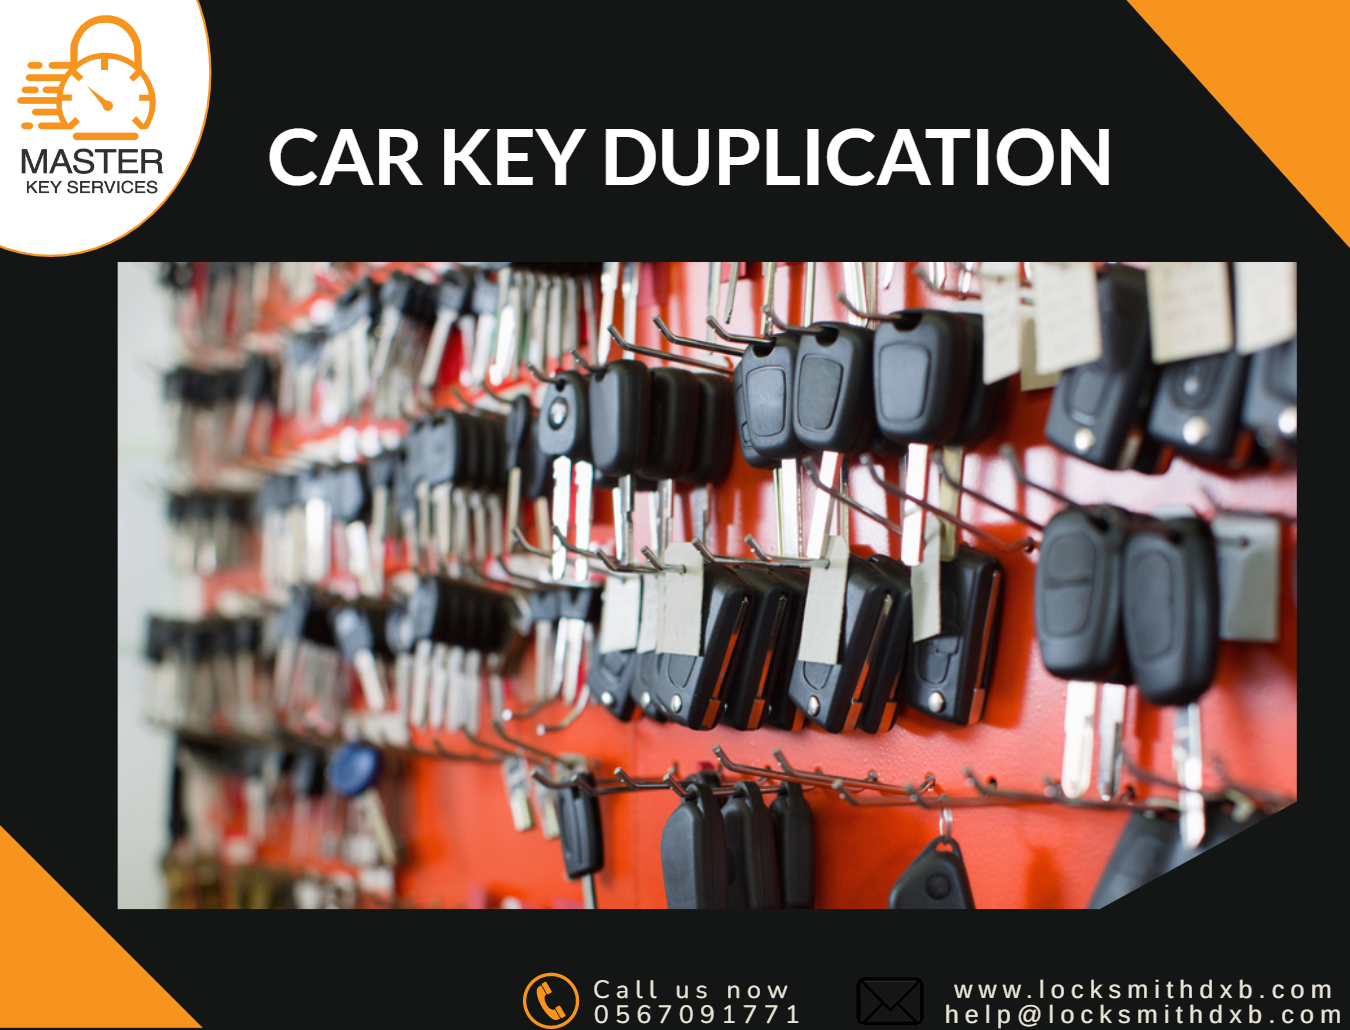 Car key duplication